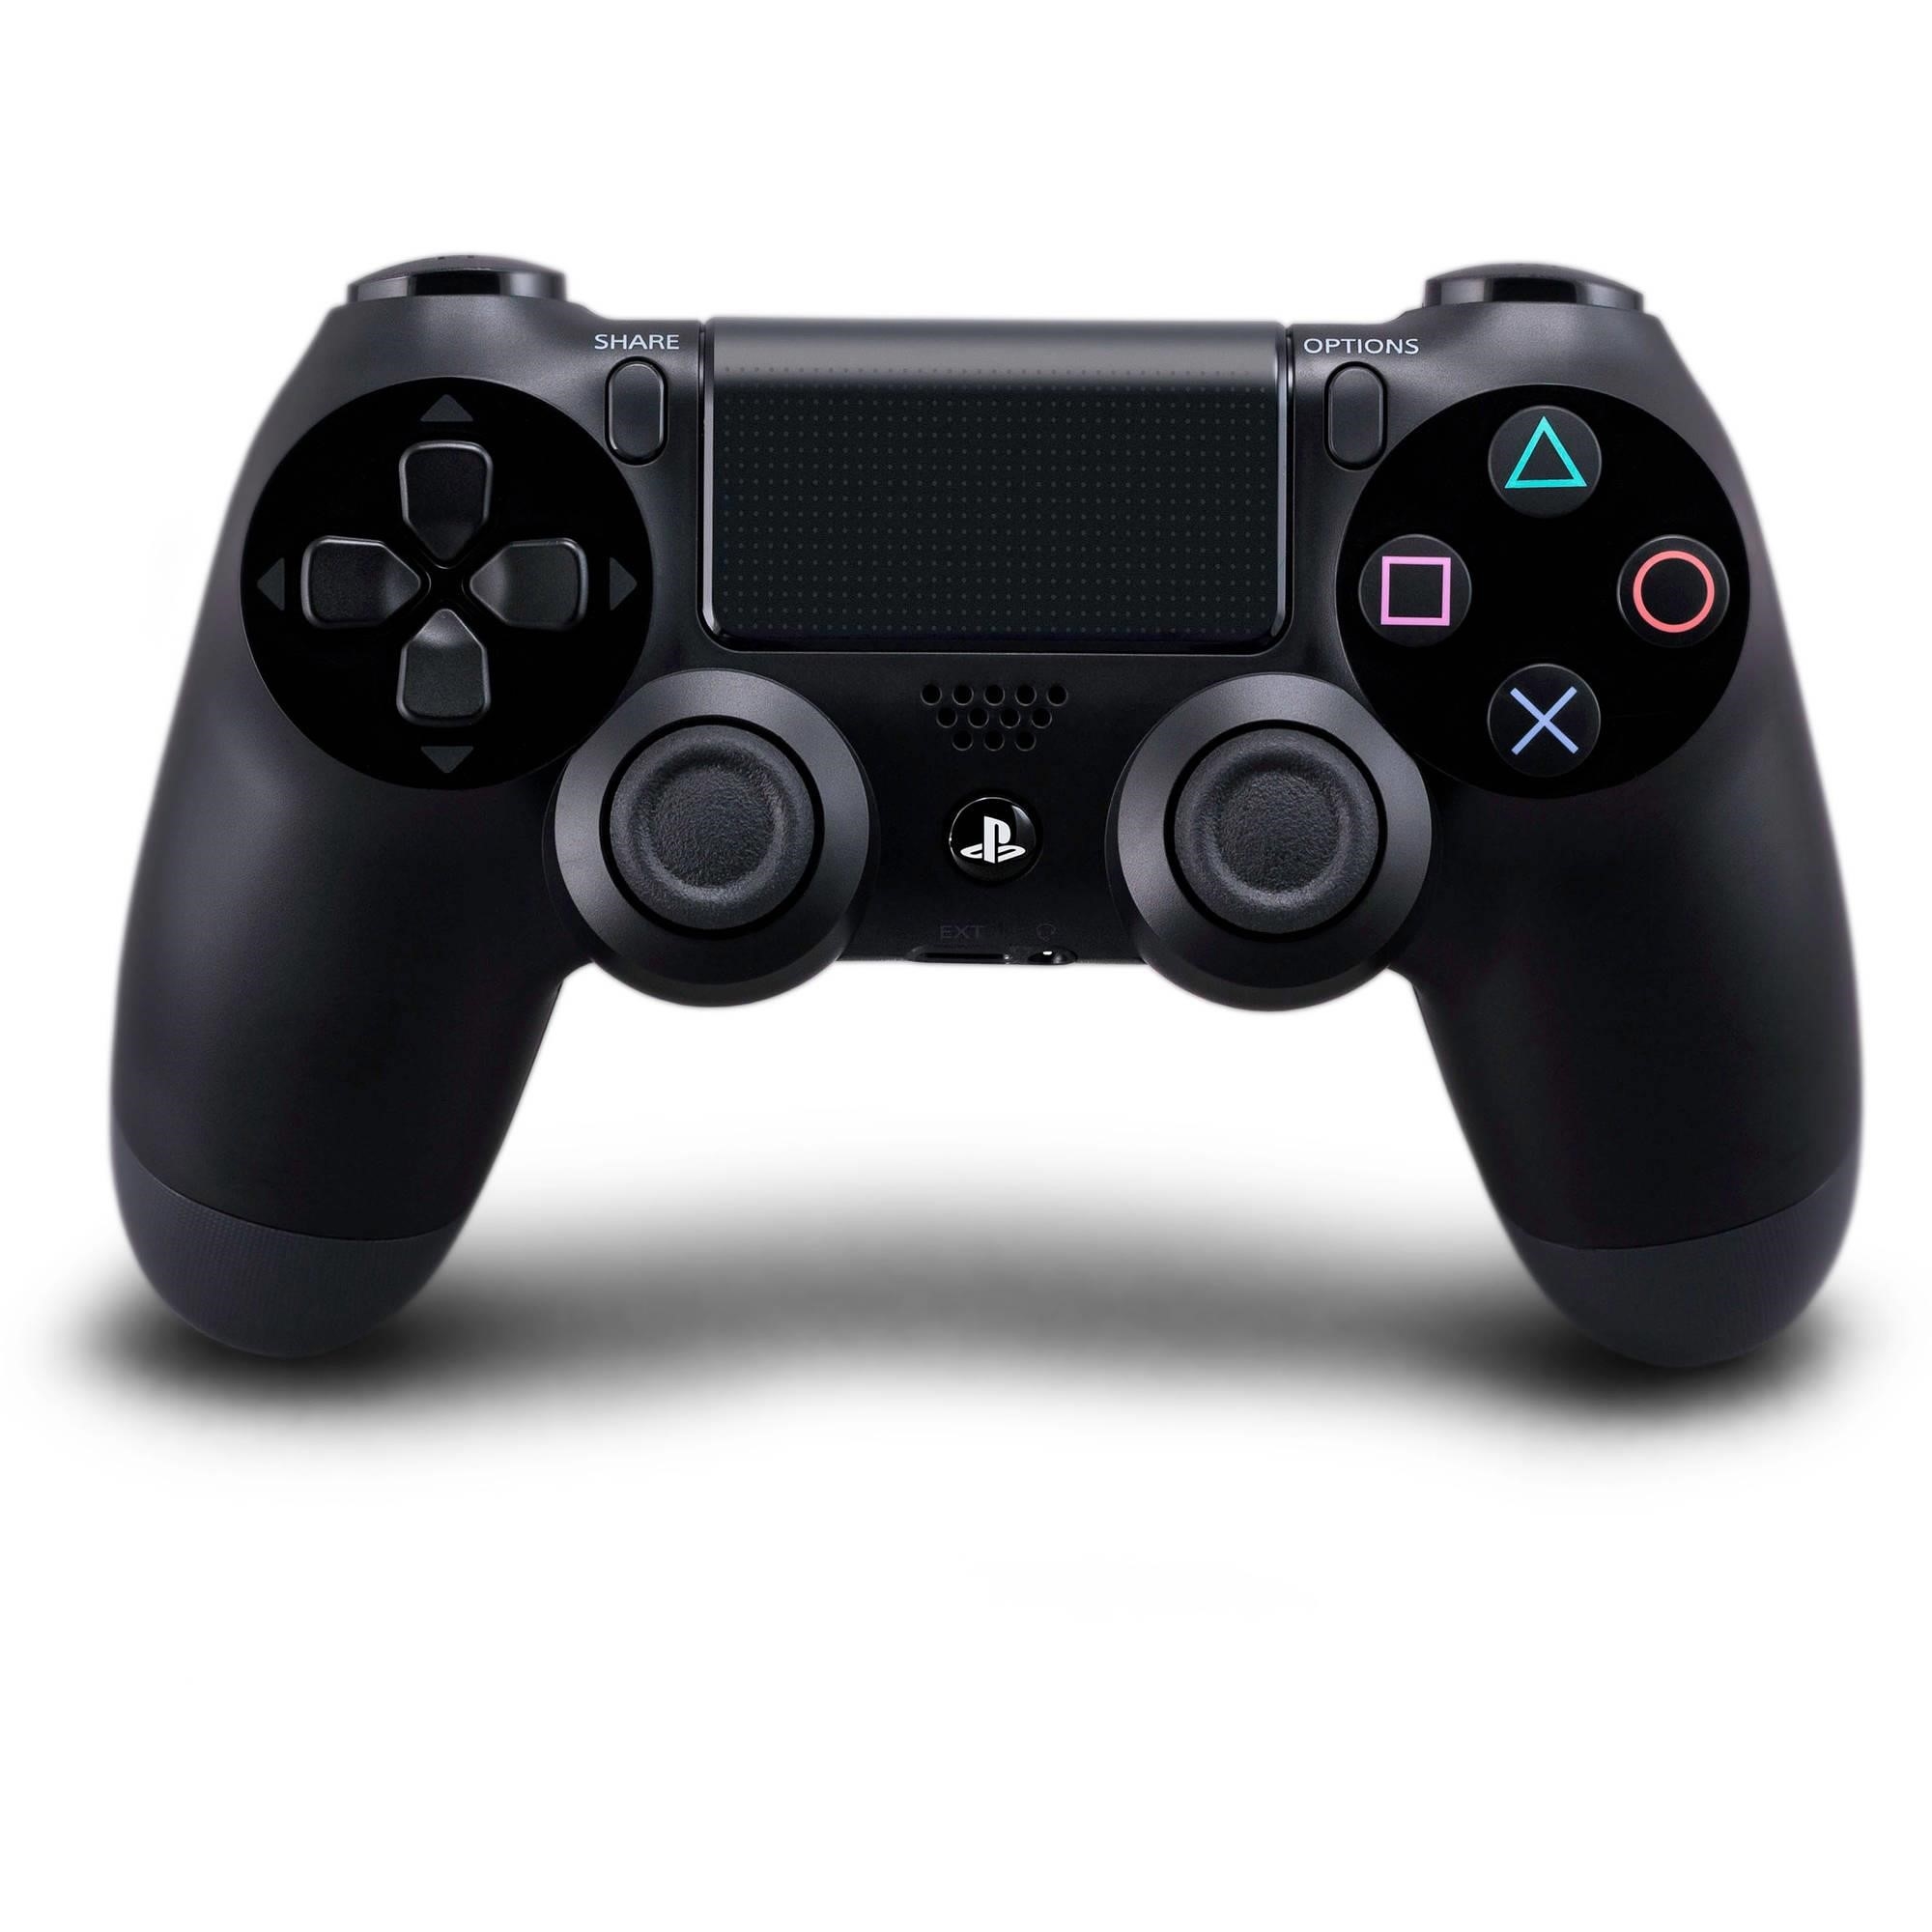 Tay cầm chơi game FO4 Sony PS4 DUALSHOCK 4 Black được thiết kế đặc biệt cho game thủ, với nhiều tính năng tiện ích và cảm biến chính xác, cho trải nghiệm chơi game tuyệt vời hơn.